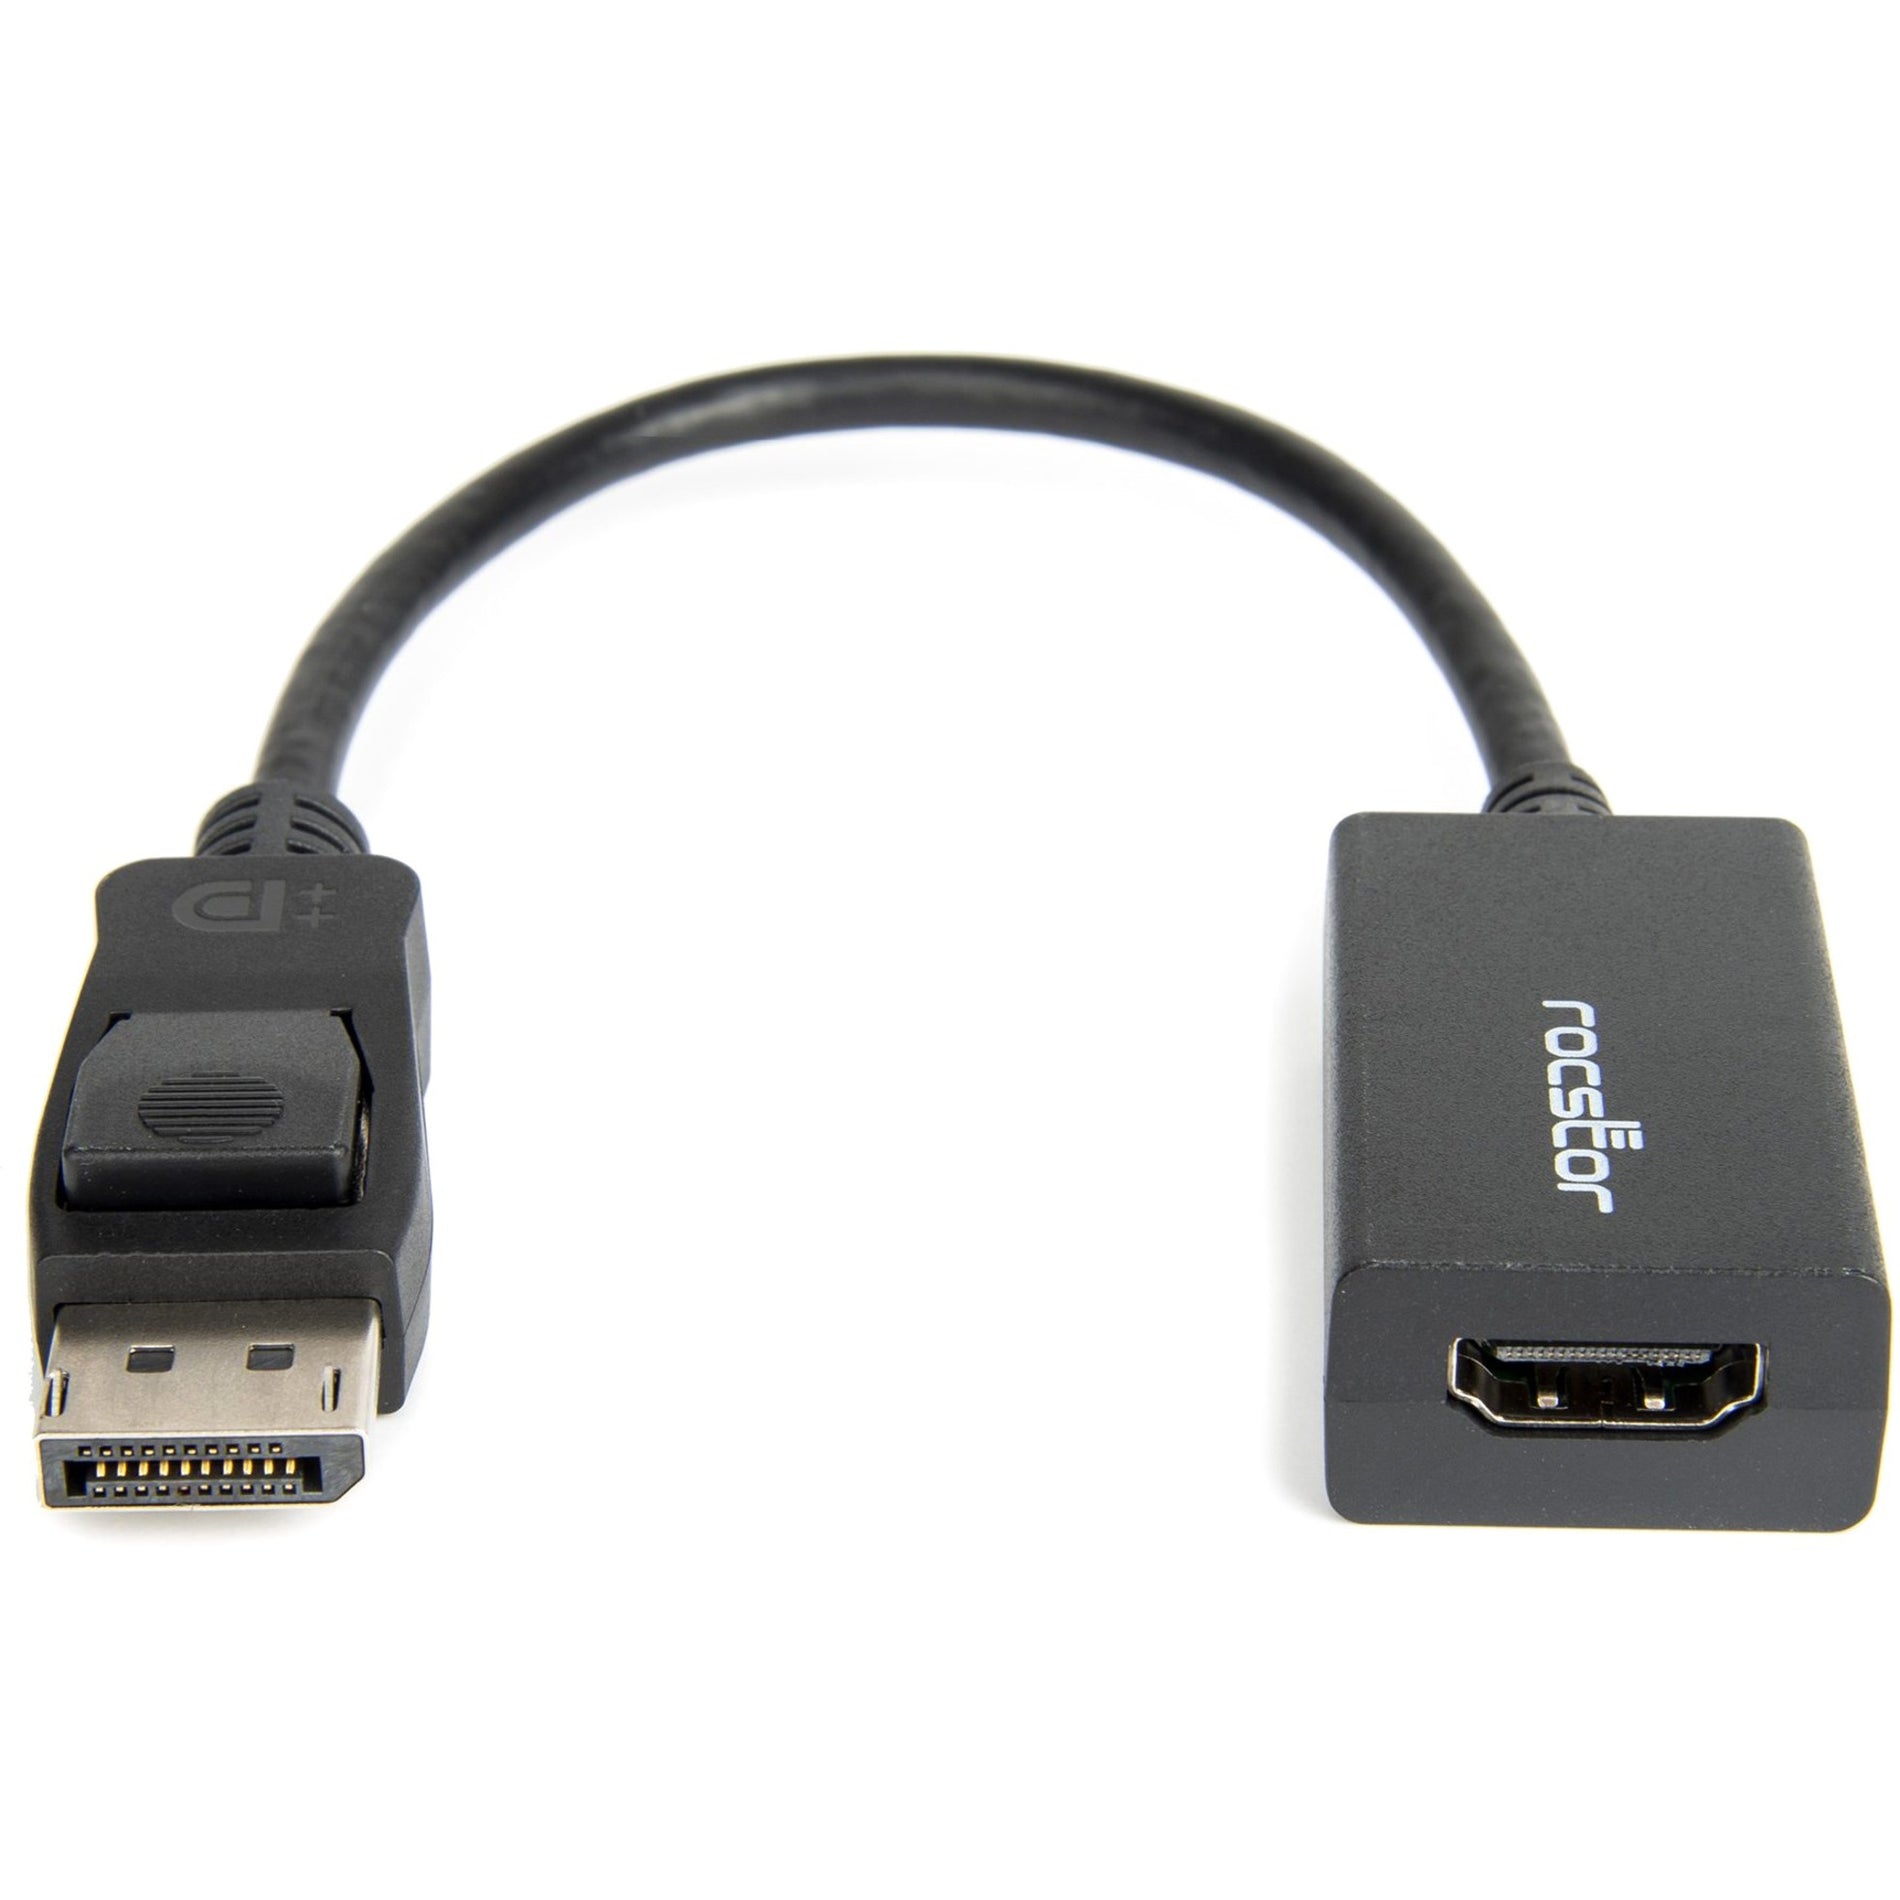 Rocstor Y10A101-B1 Adaptateur Convertisseur DisplayPort (mâle) vers HDMI (femelle) Résolution 1920 x 1200 prise en charge